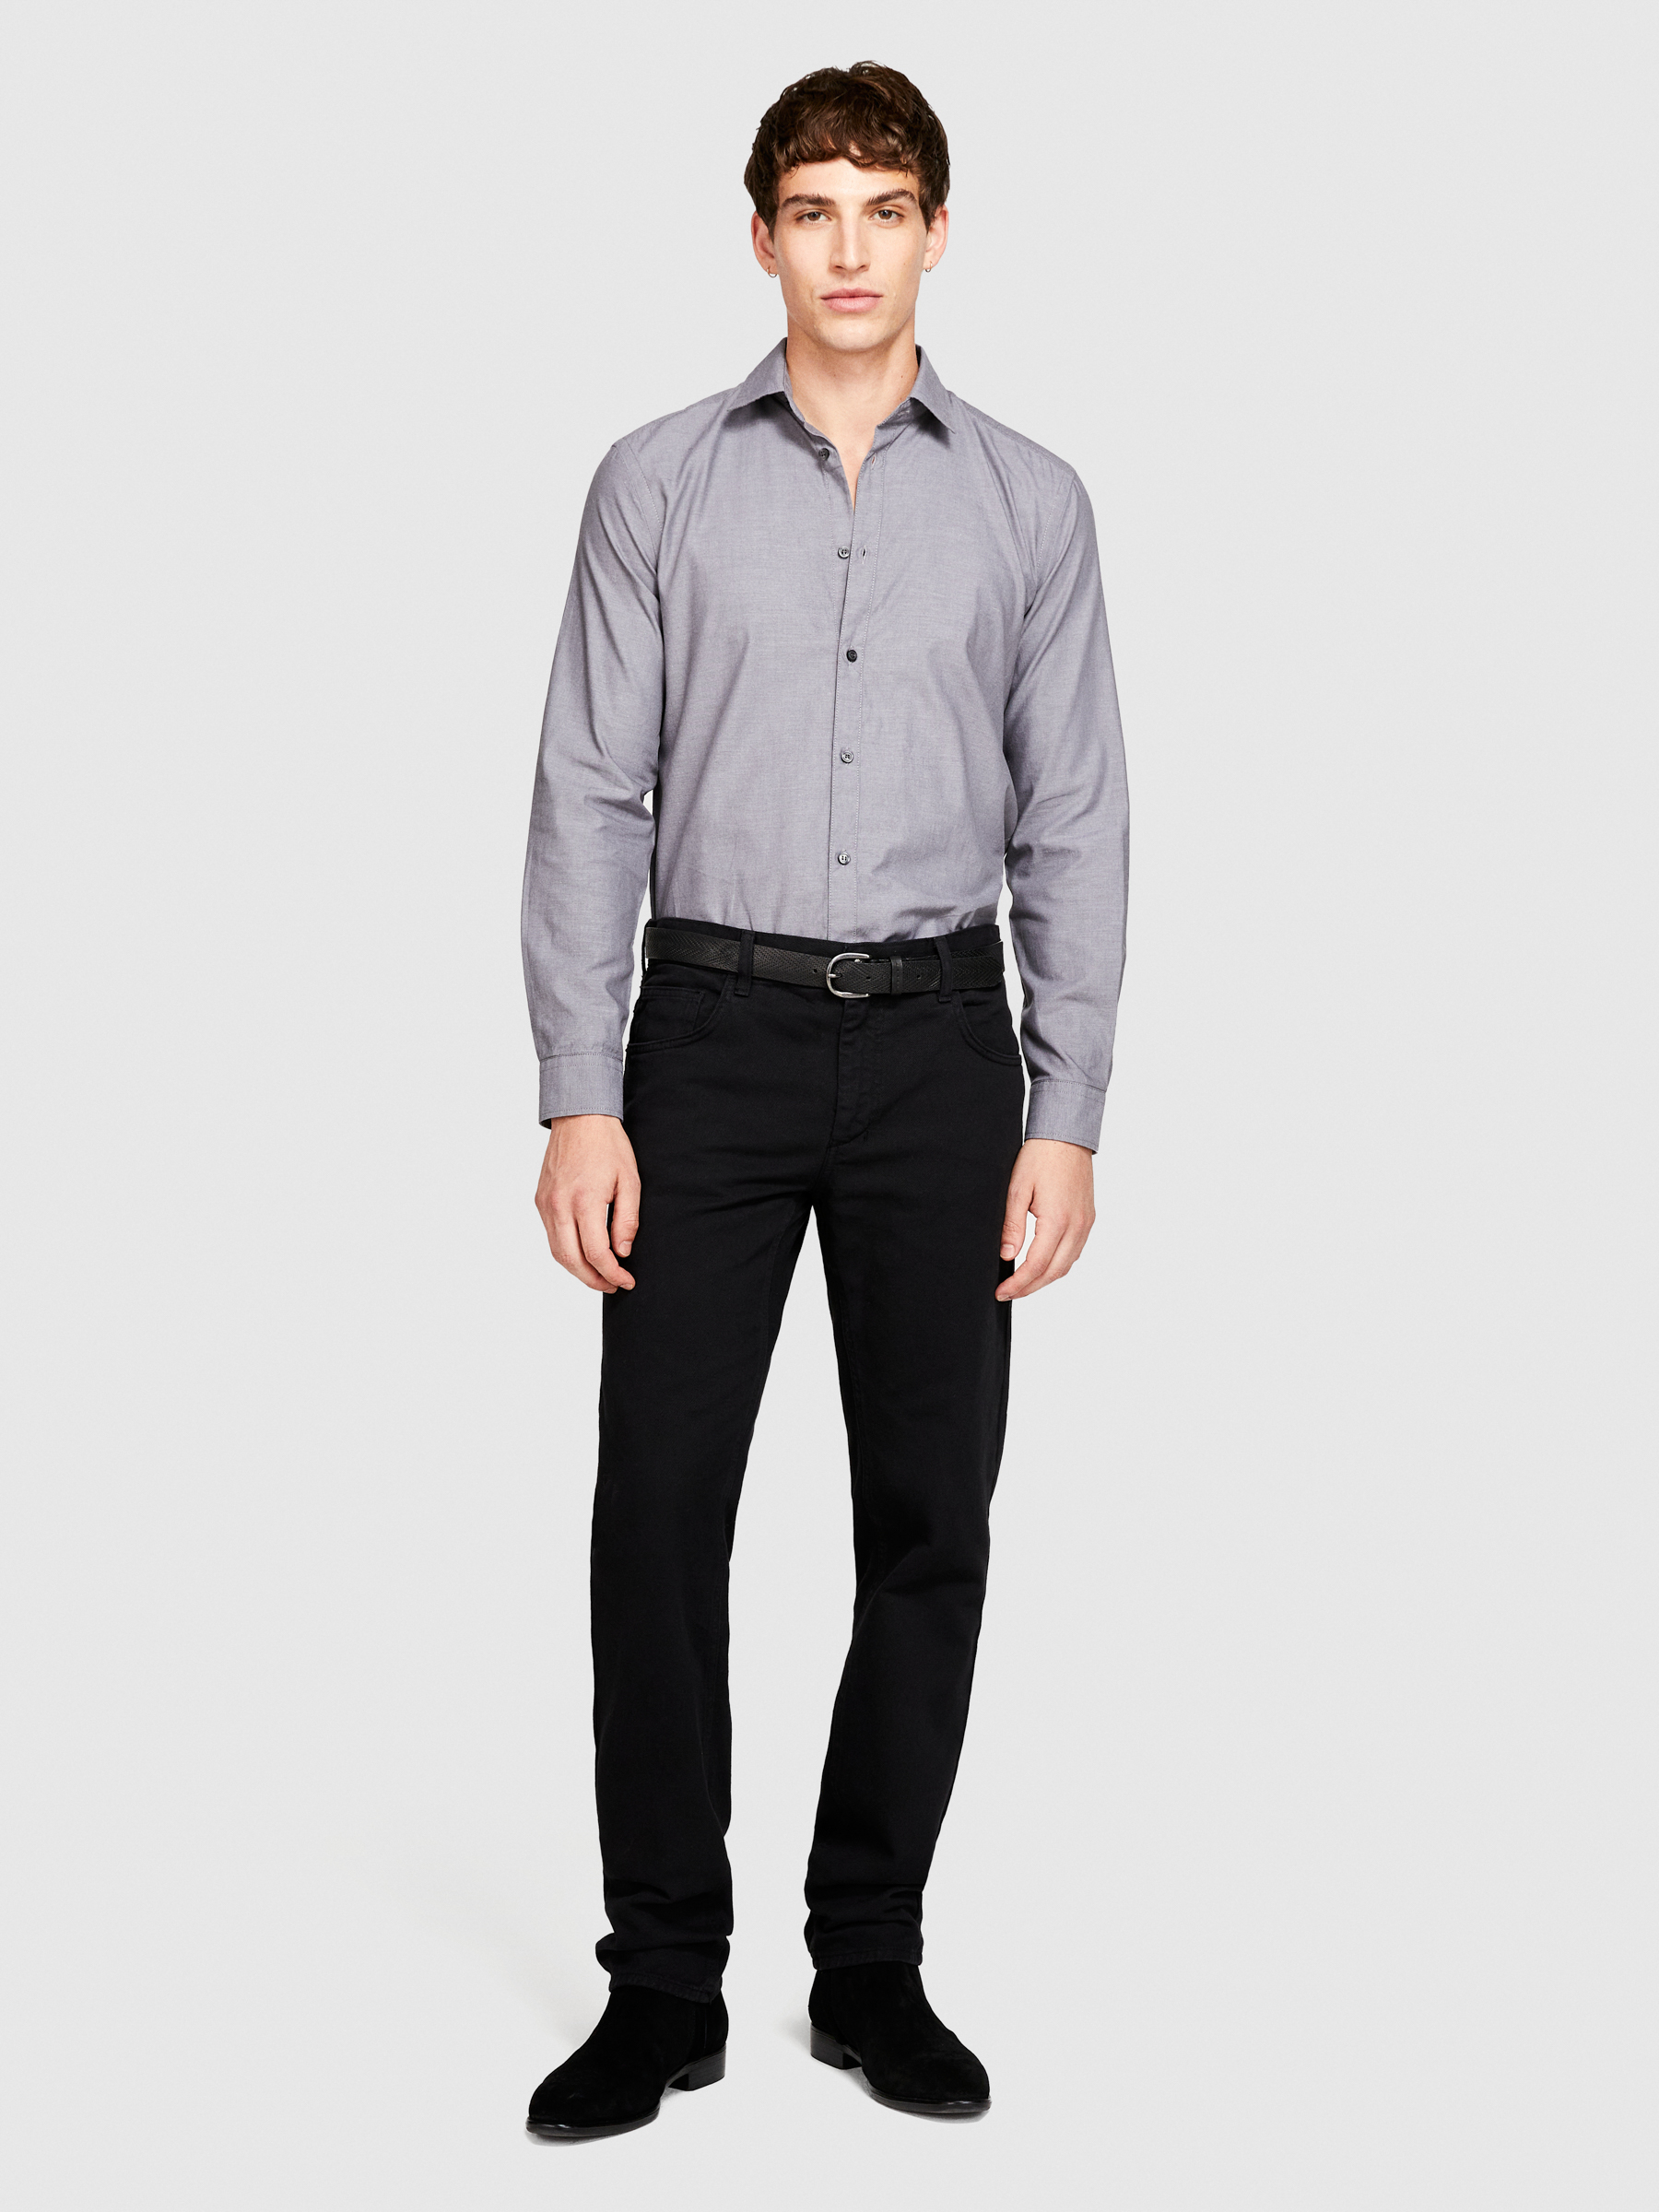 Sisley - 100% Cotton Shirt, Man, Gray, Size: 45